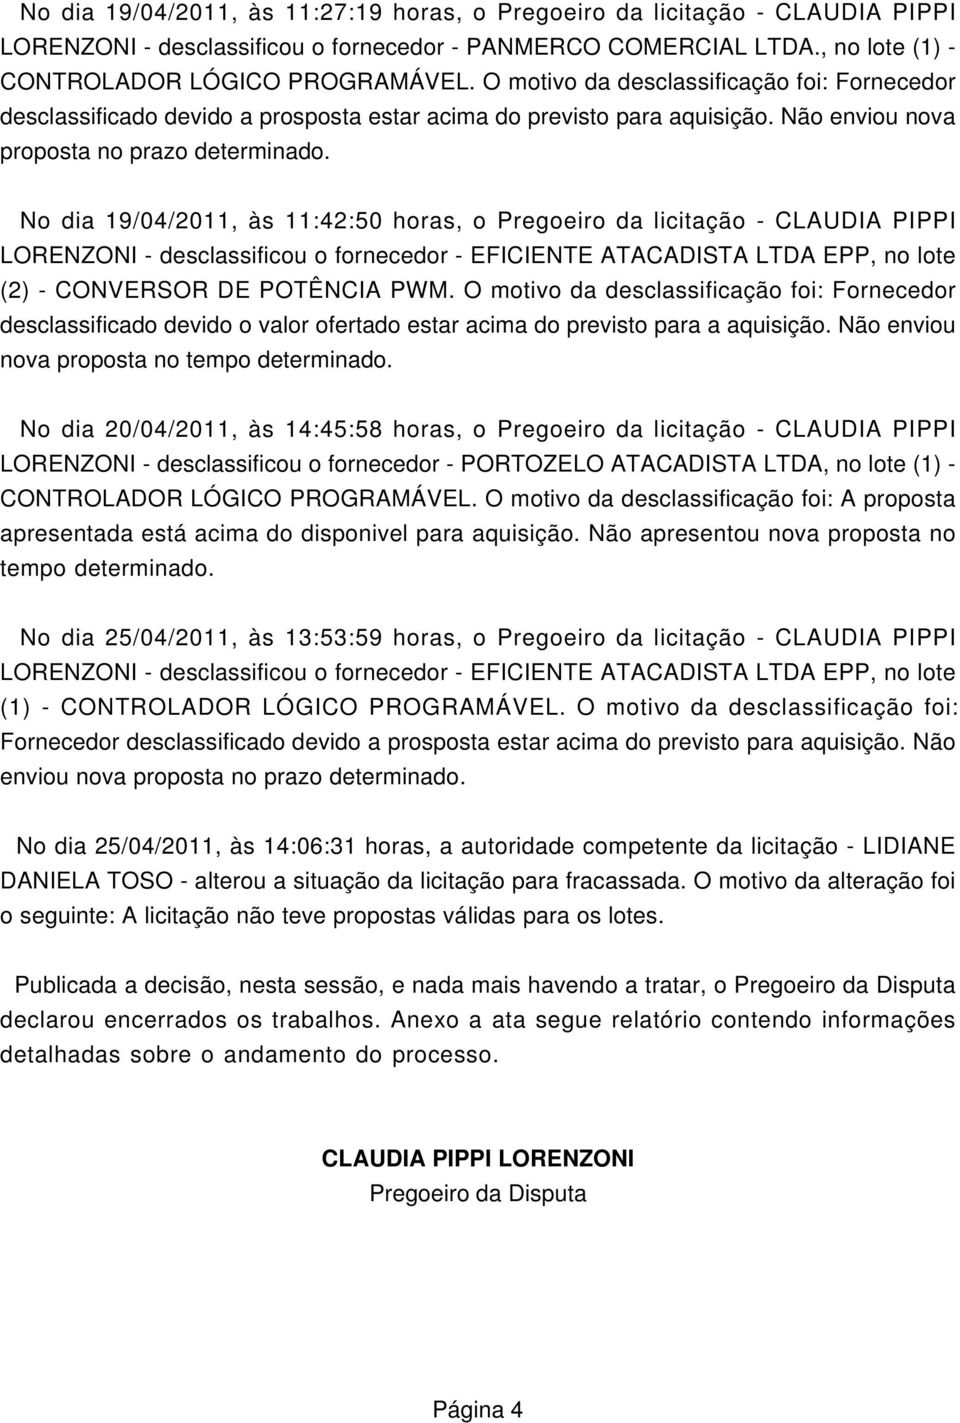 No dia 19/04/2011, às 11:42:50 horas, o Pregoeiro da licitação - CLAUDIA PIPPI LORENZONI - desclassificou o fornecedor - EFICIENTE ATACADISTA LTDA EPP, no lote (2) - CONVERSOR DE POTÊNCIA PWM.